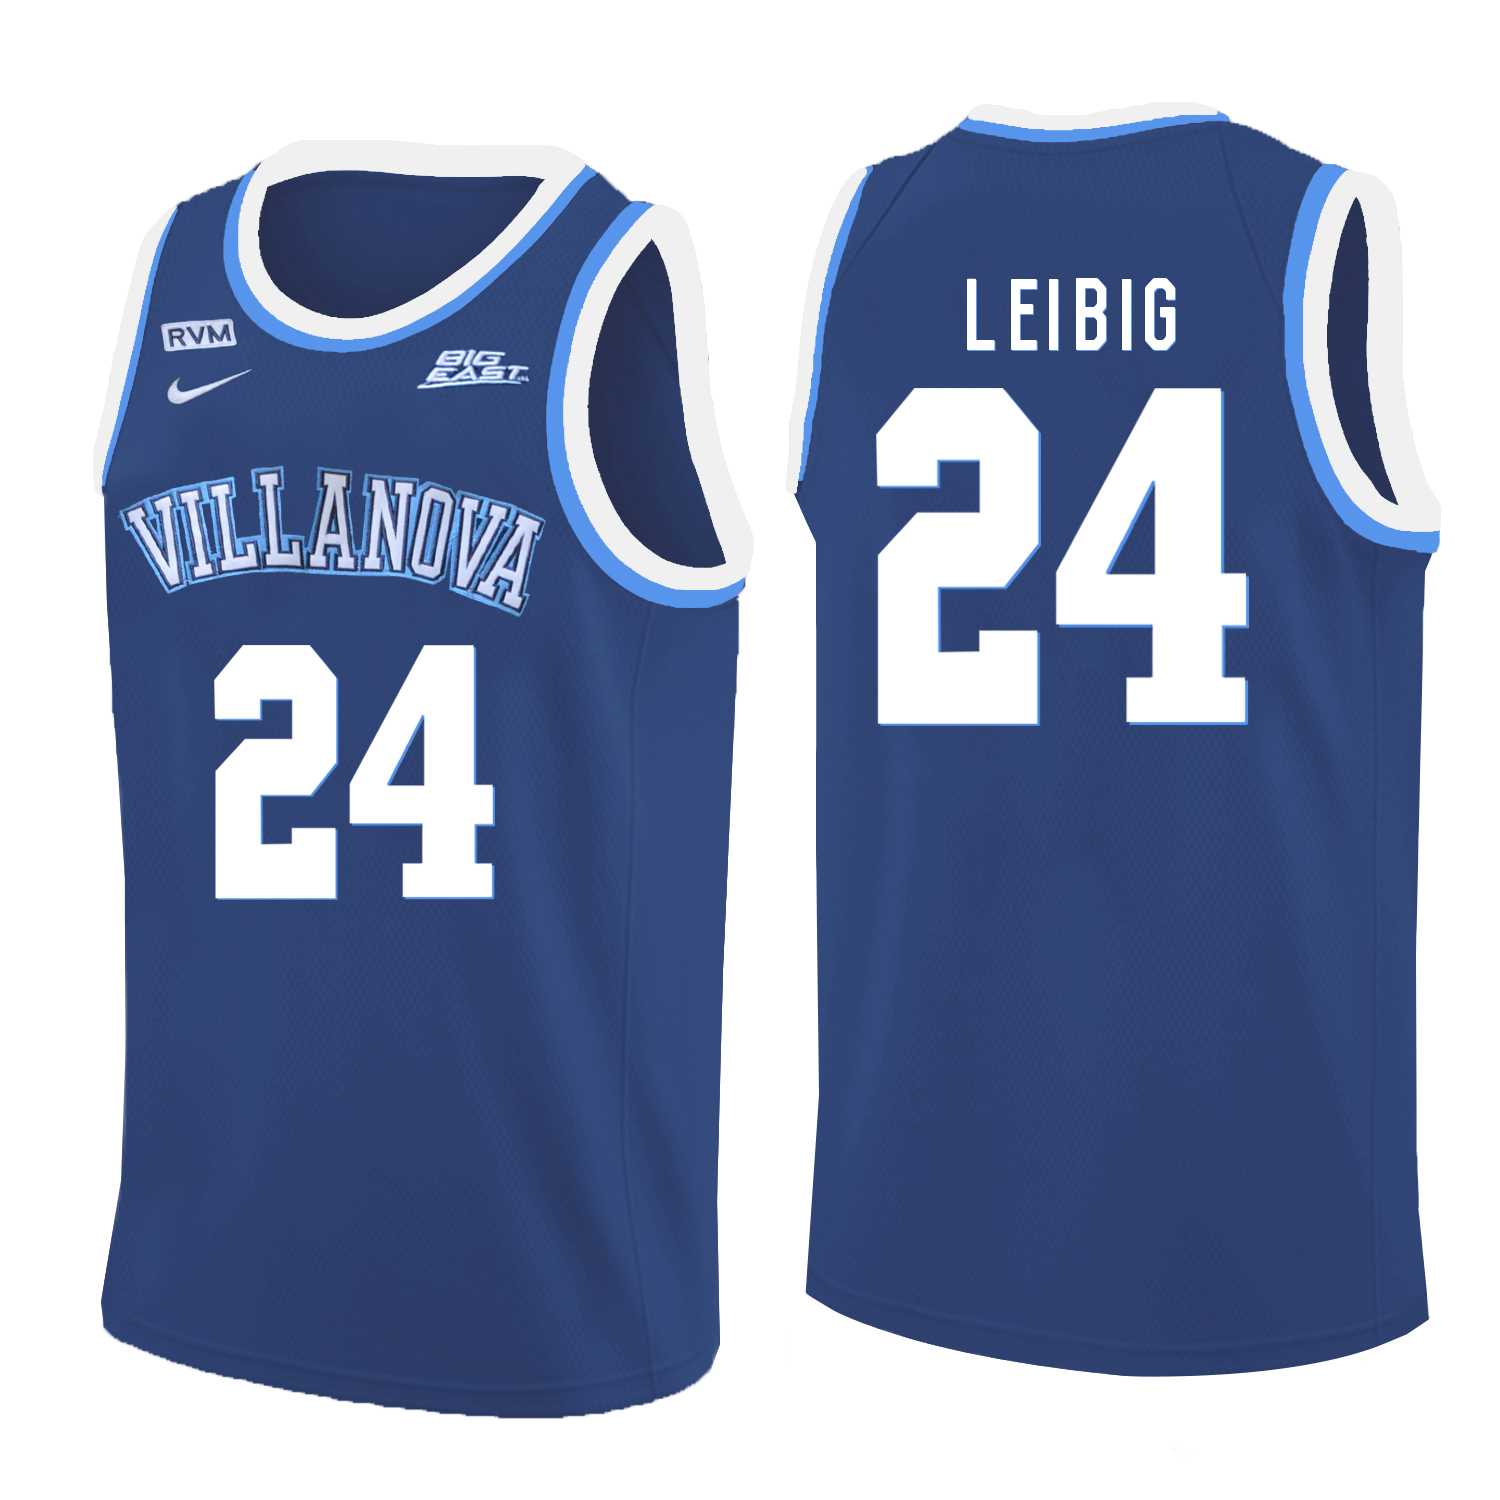 Villanova Wildcats 24 Tom Leibig Blue College Basketball Jersey Dzhi